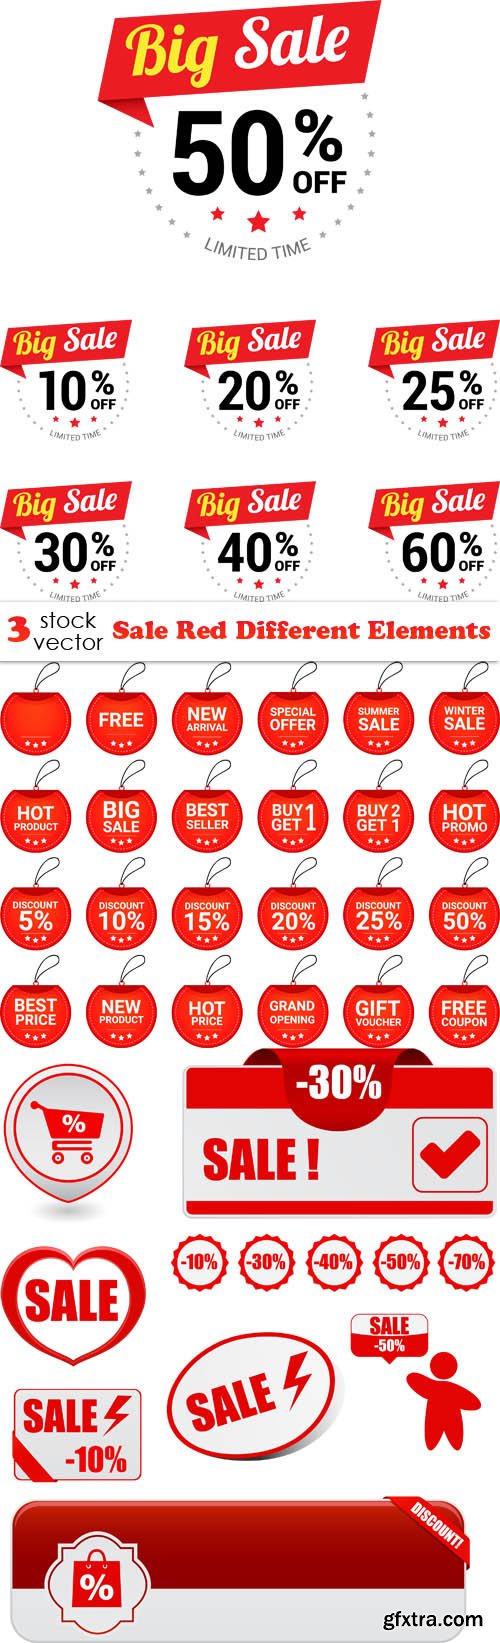 Vectors - Sale Red Different Elements